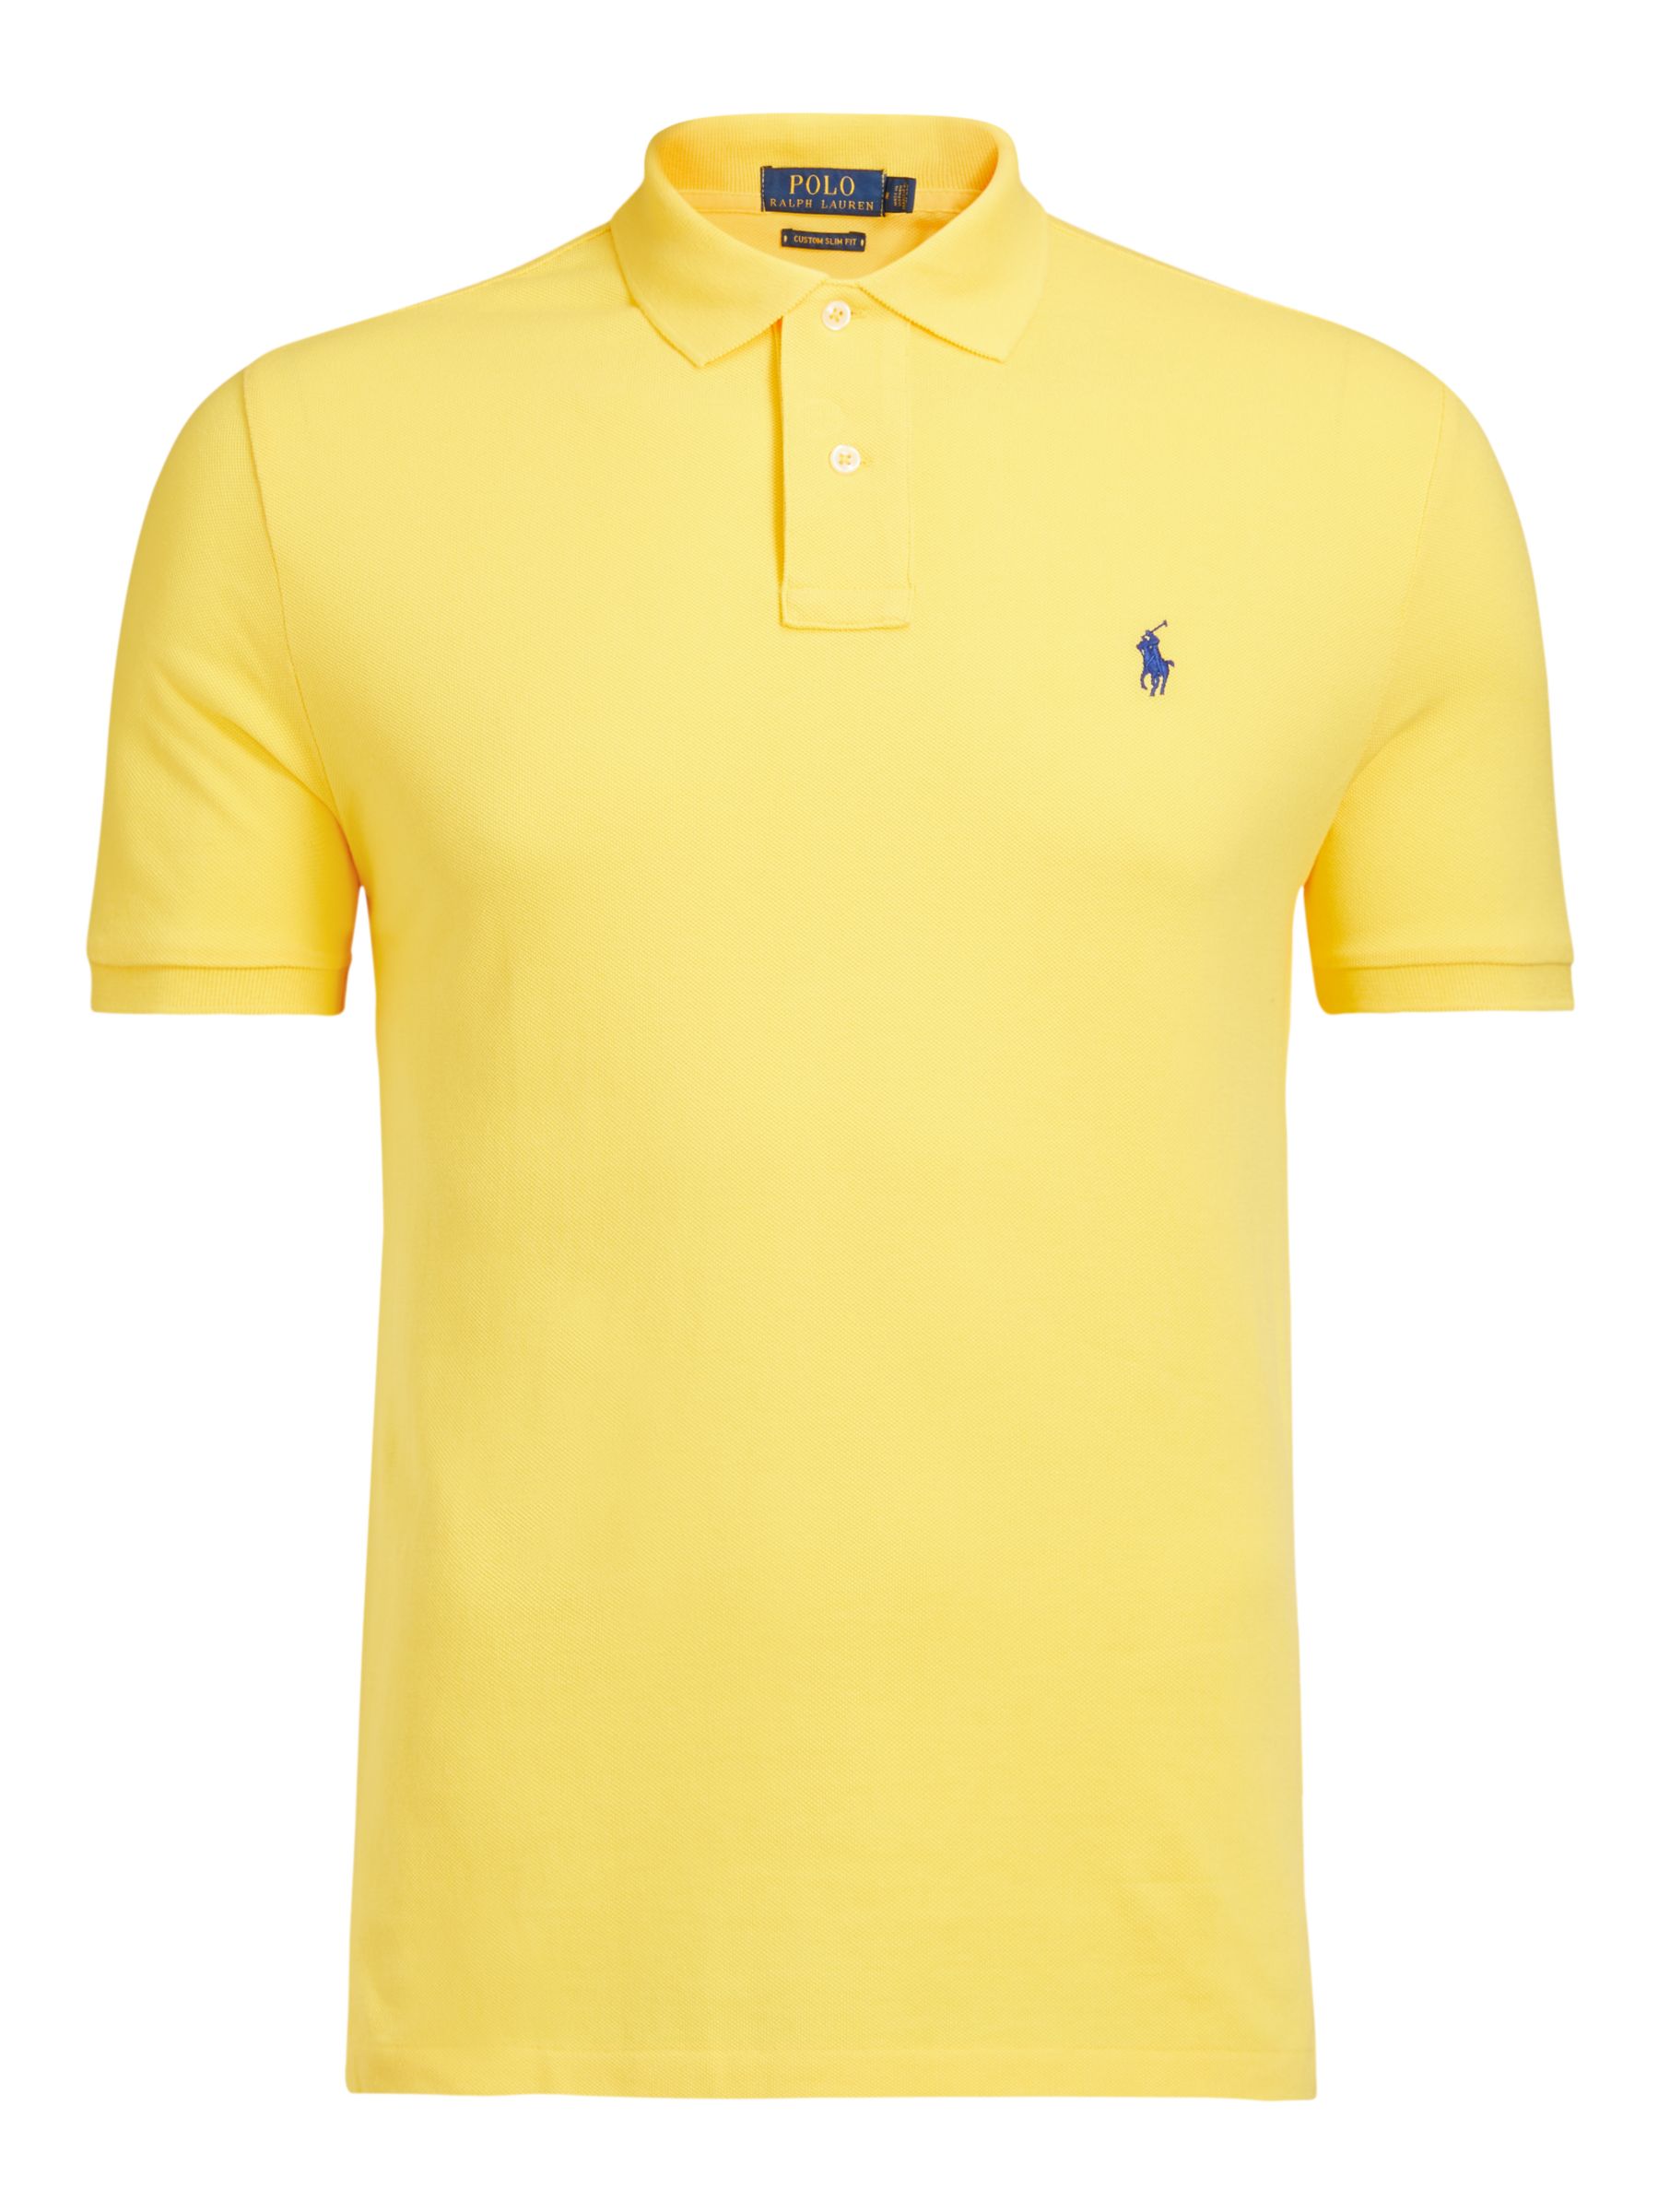 yellow ralph lauren polo t shirt